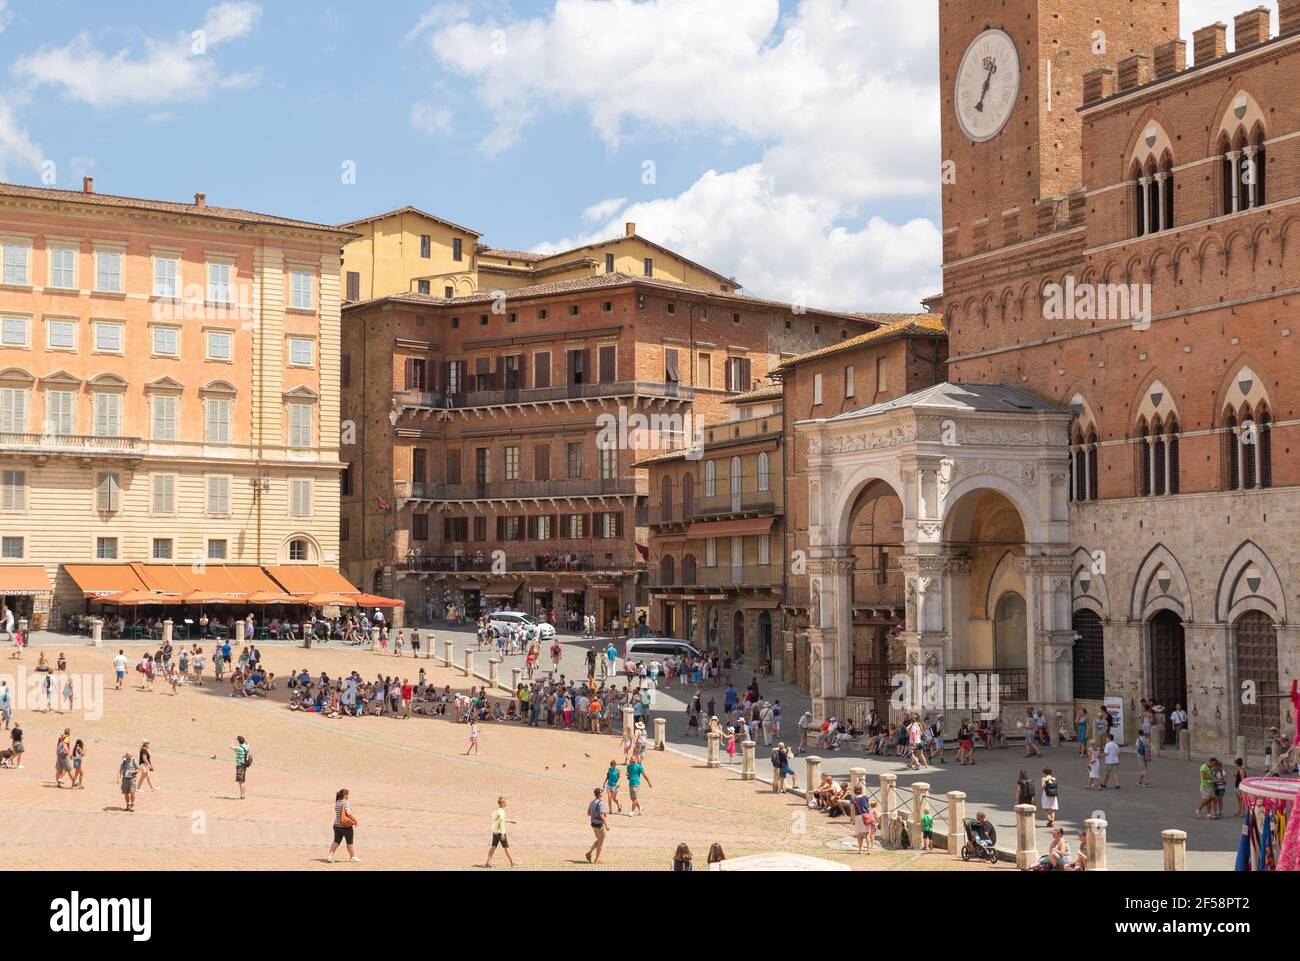 Plaza del campo es el principal espacio público del centro histórico de Siena, Toscana, Italia Foto de stock